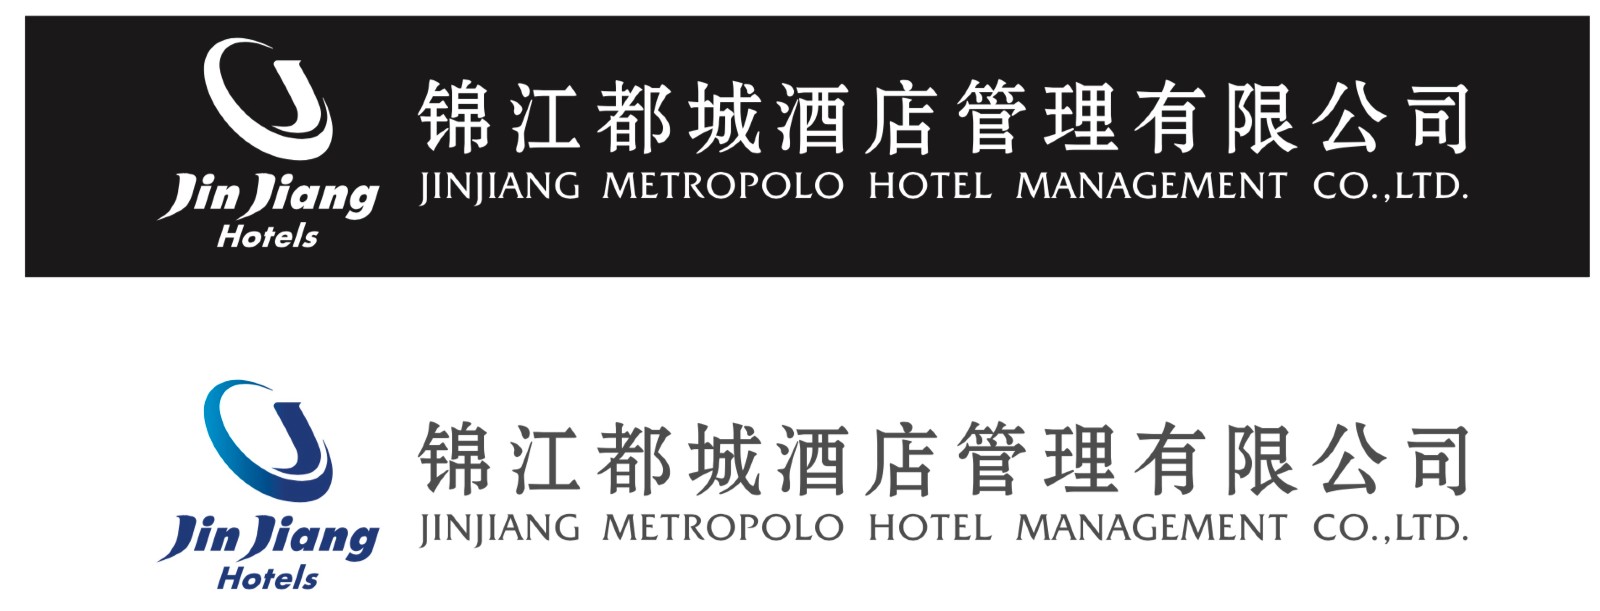 锦江都城酒店管理有限公司